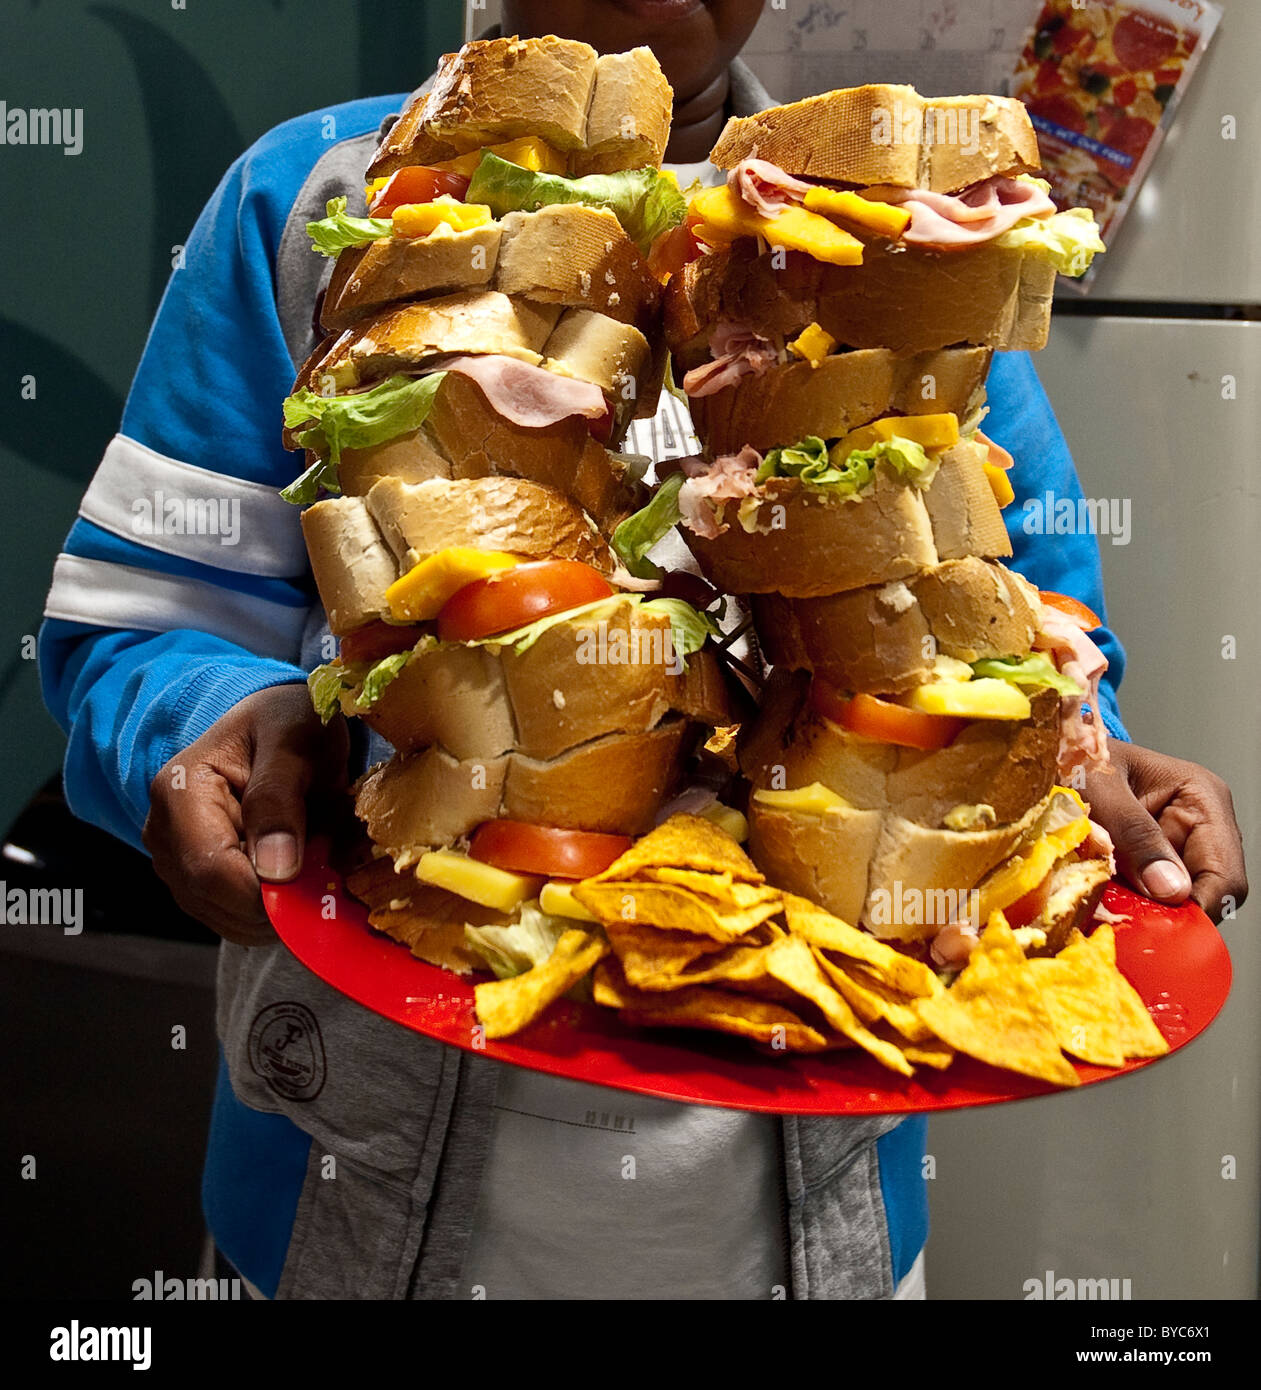 Stapel von Sandwiches Stockfoto